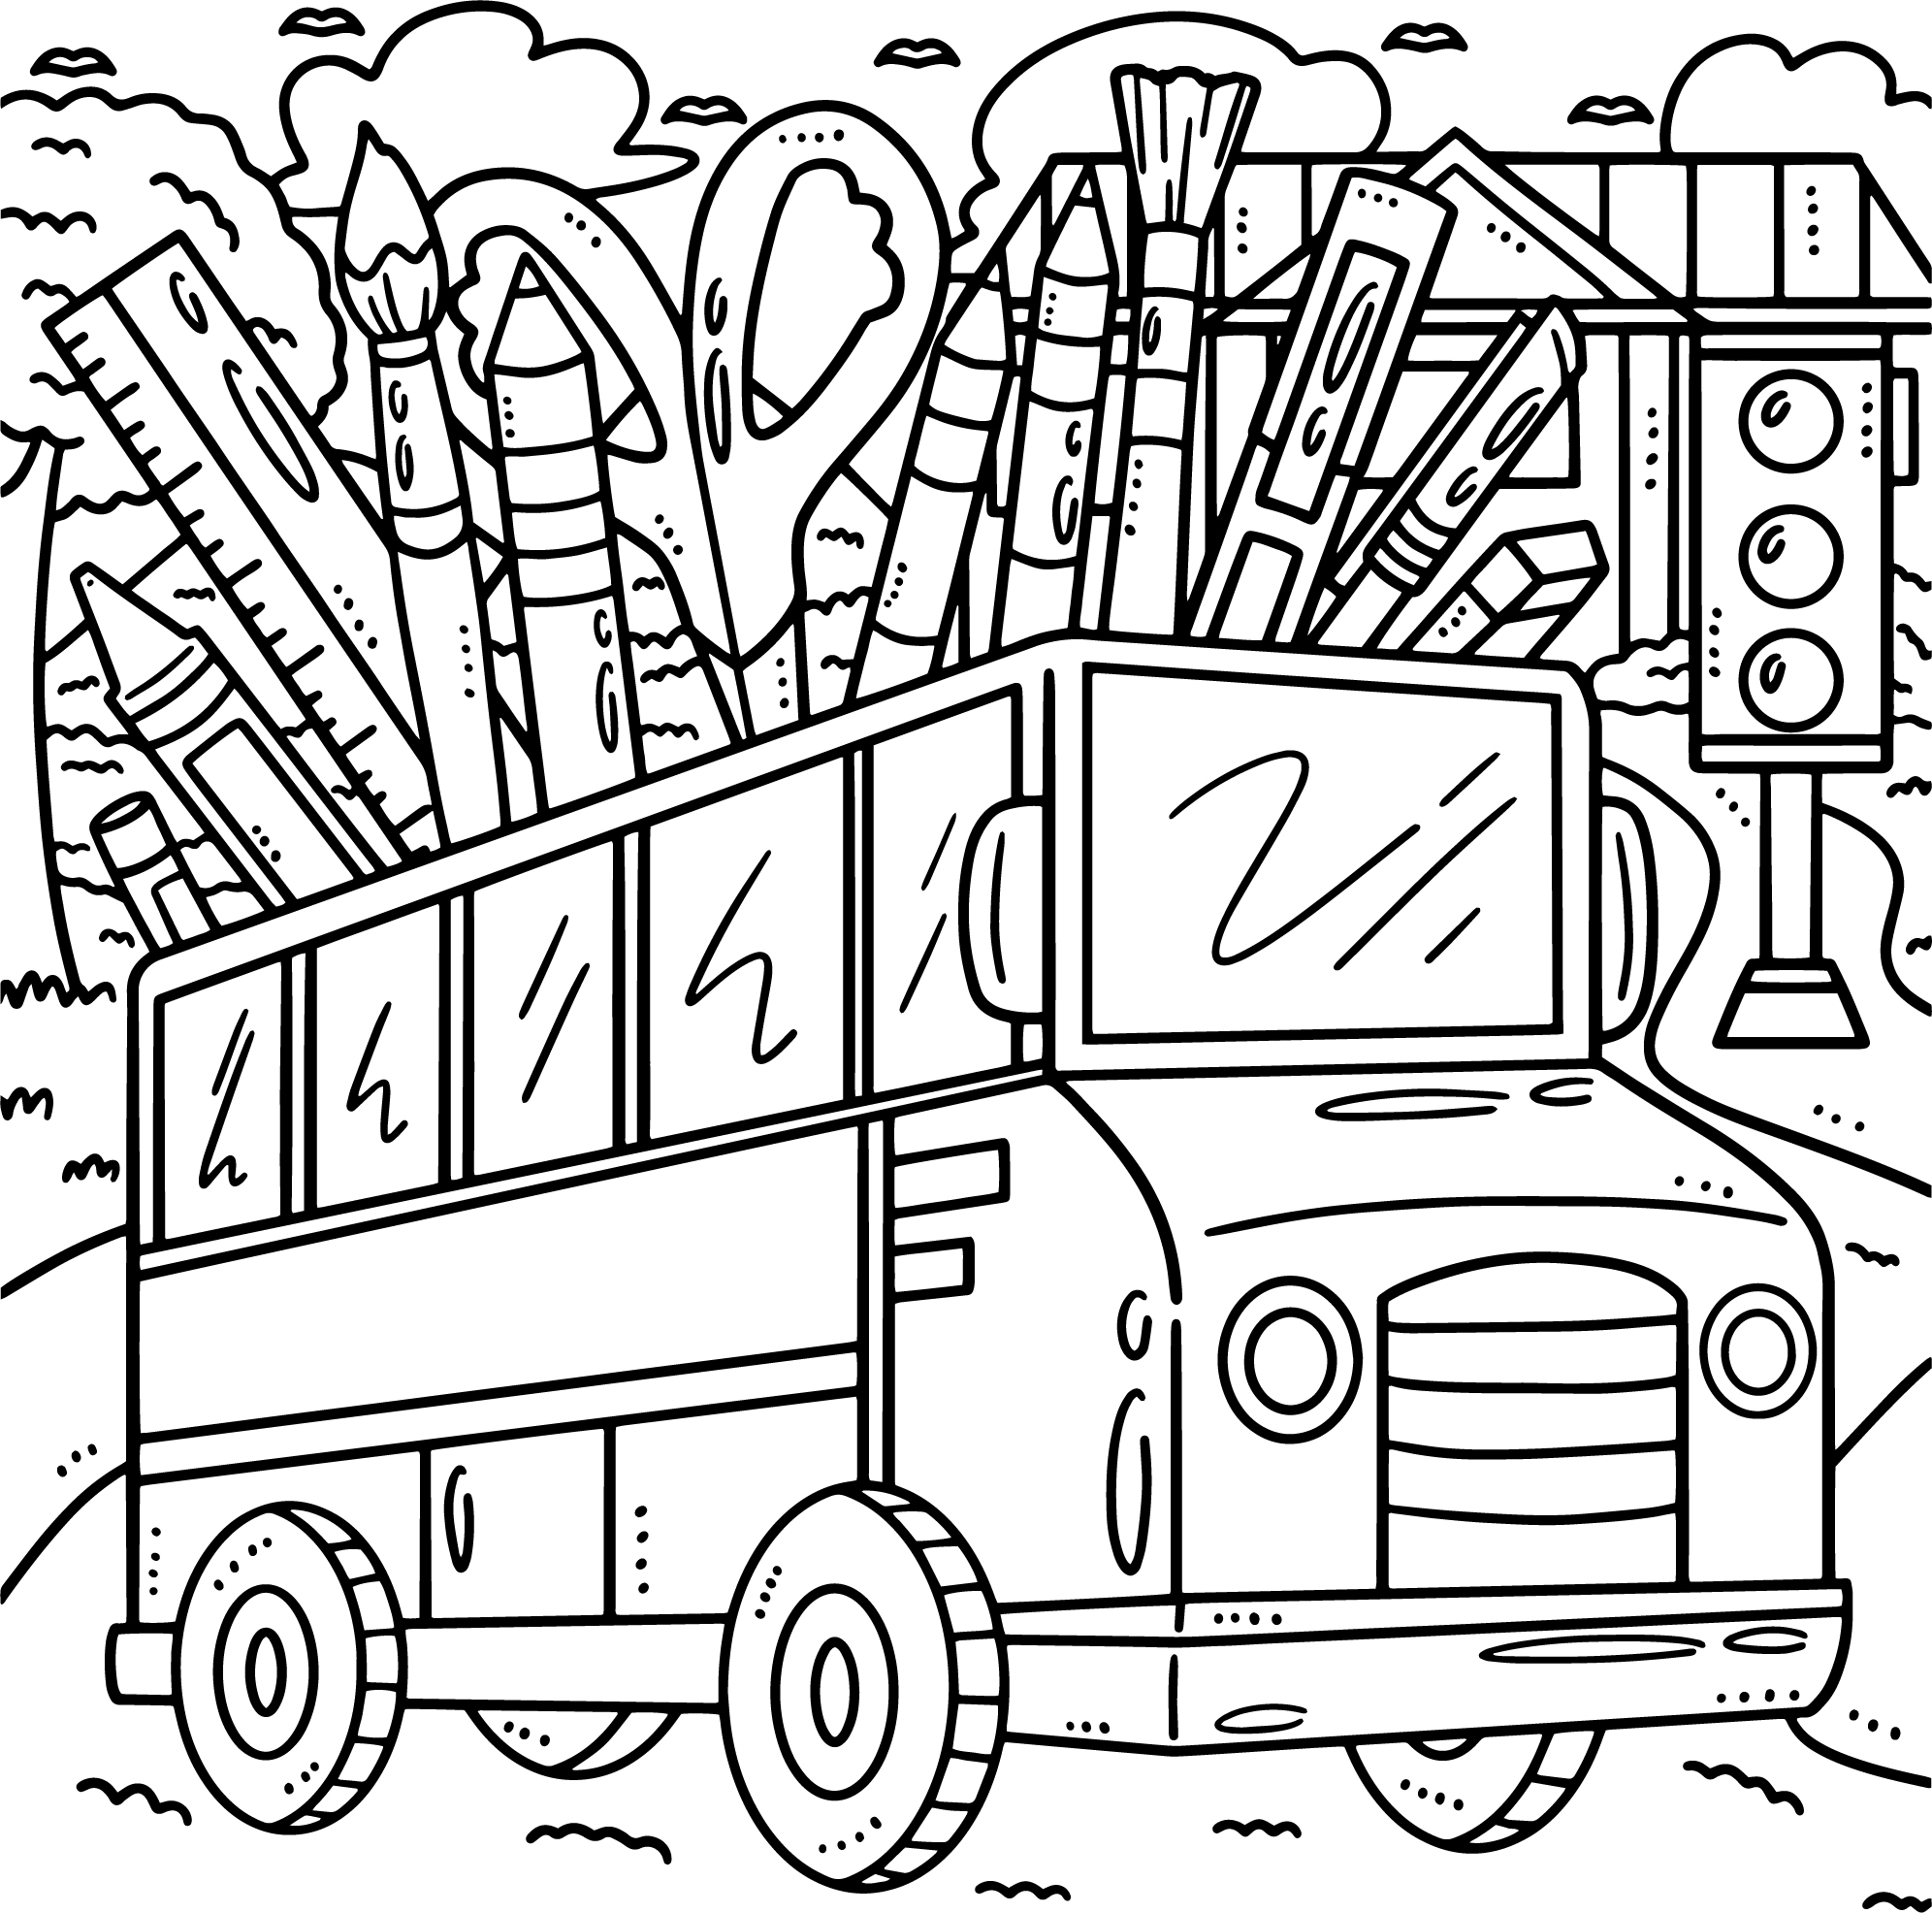 Раскраска мультяшный школьный автобус с карандашами и кисточками формата А4 в высоком качестве